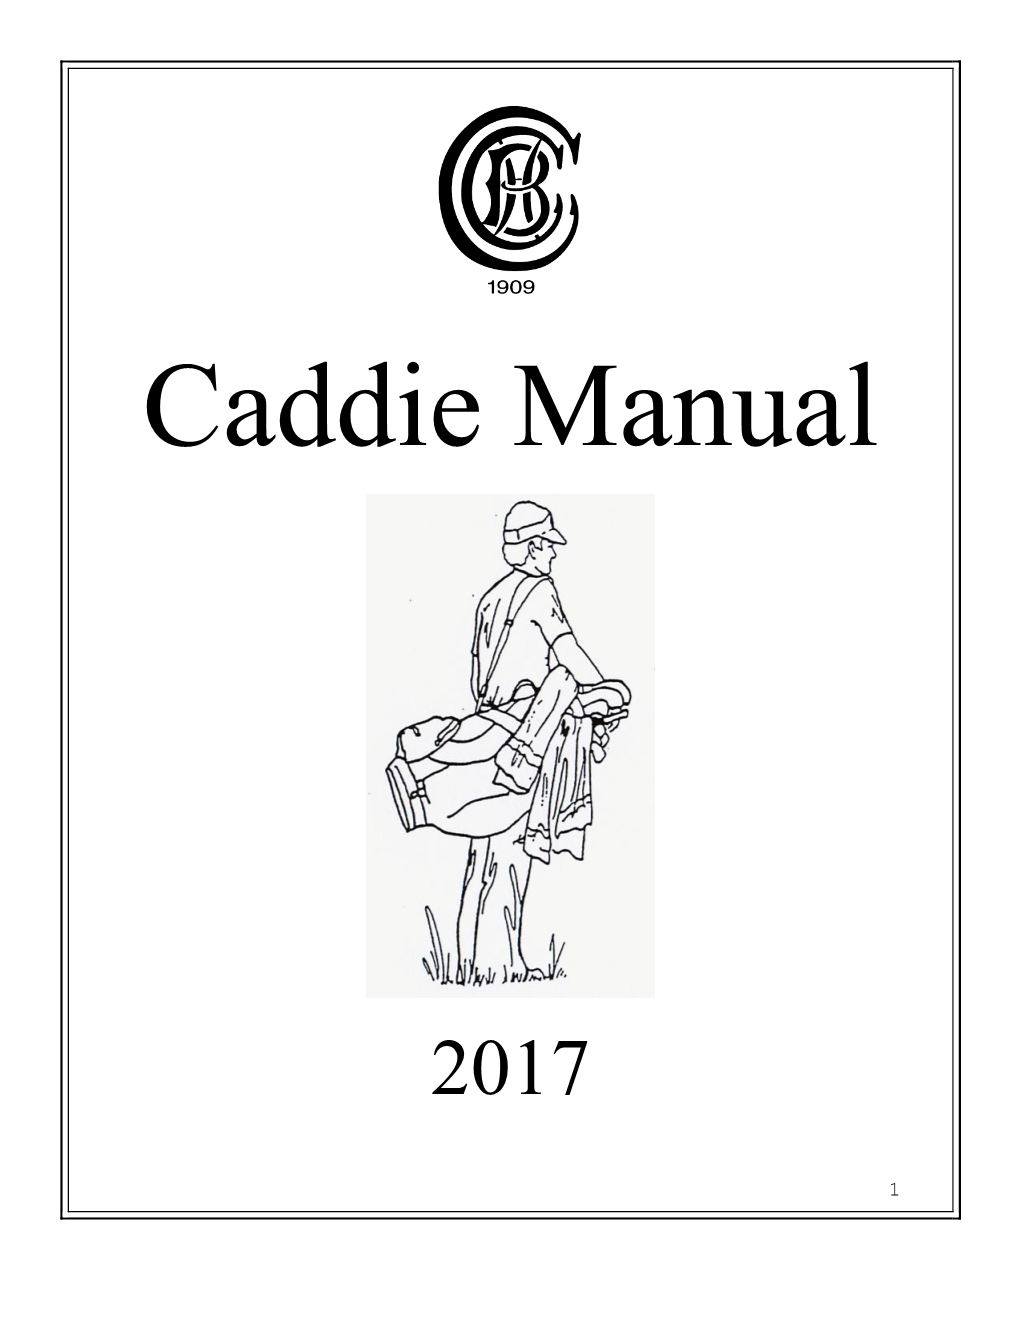 Caddie Manual